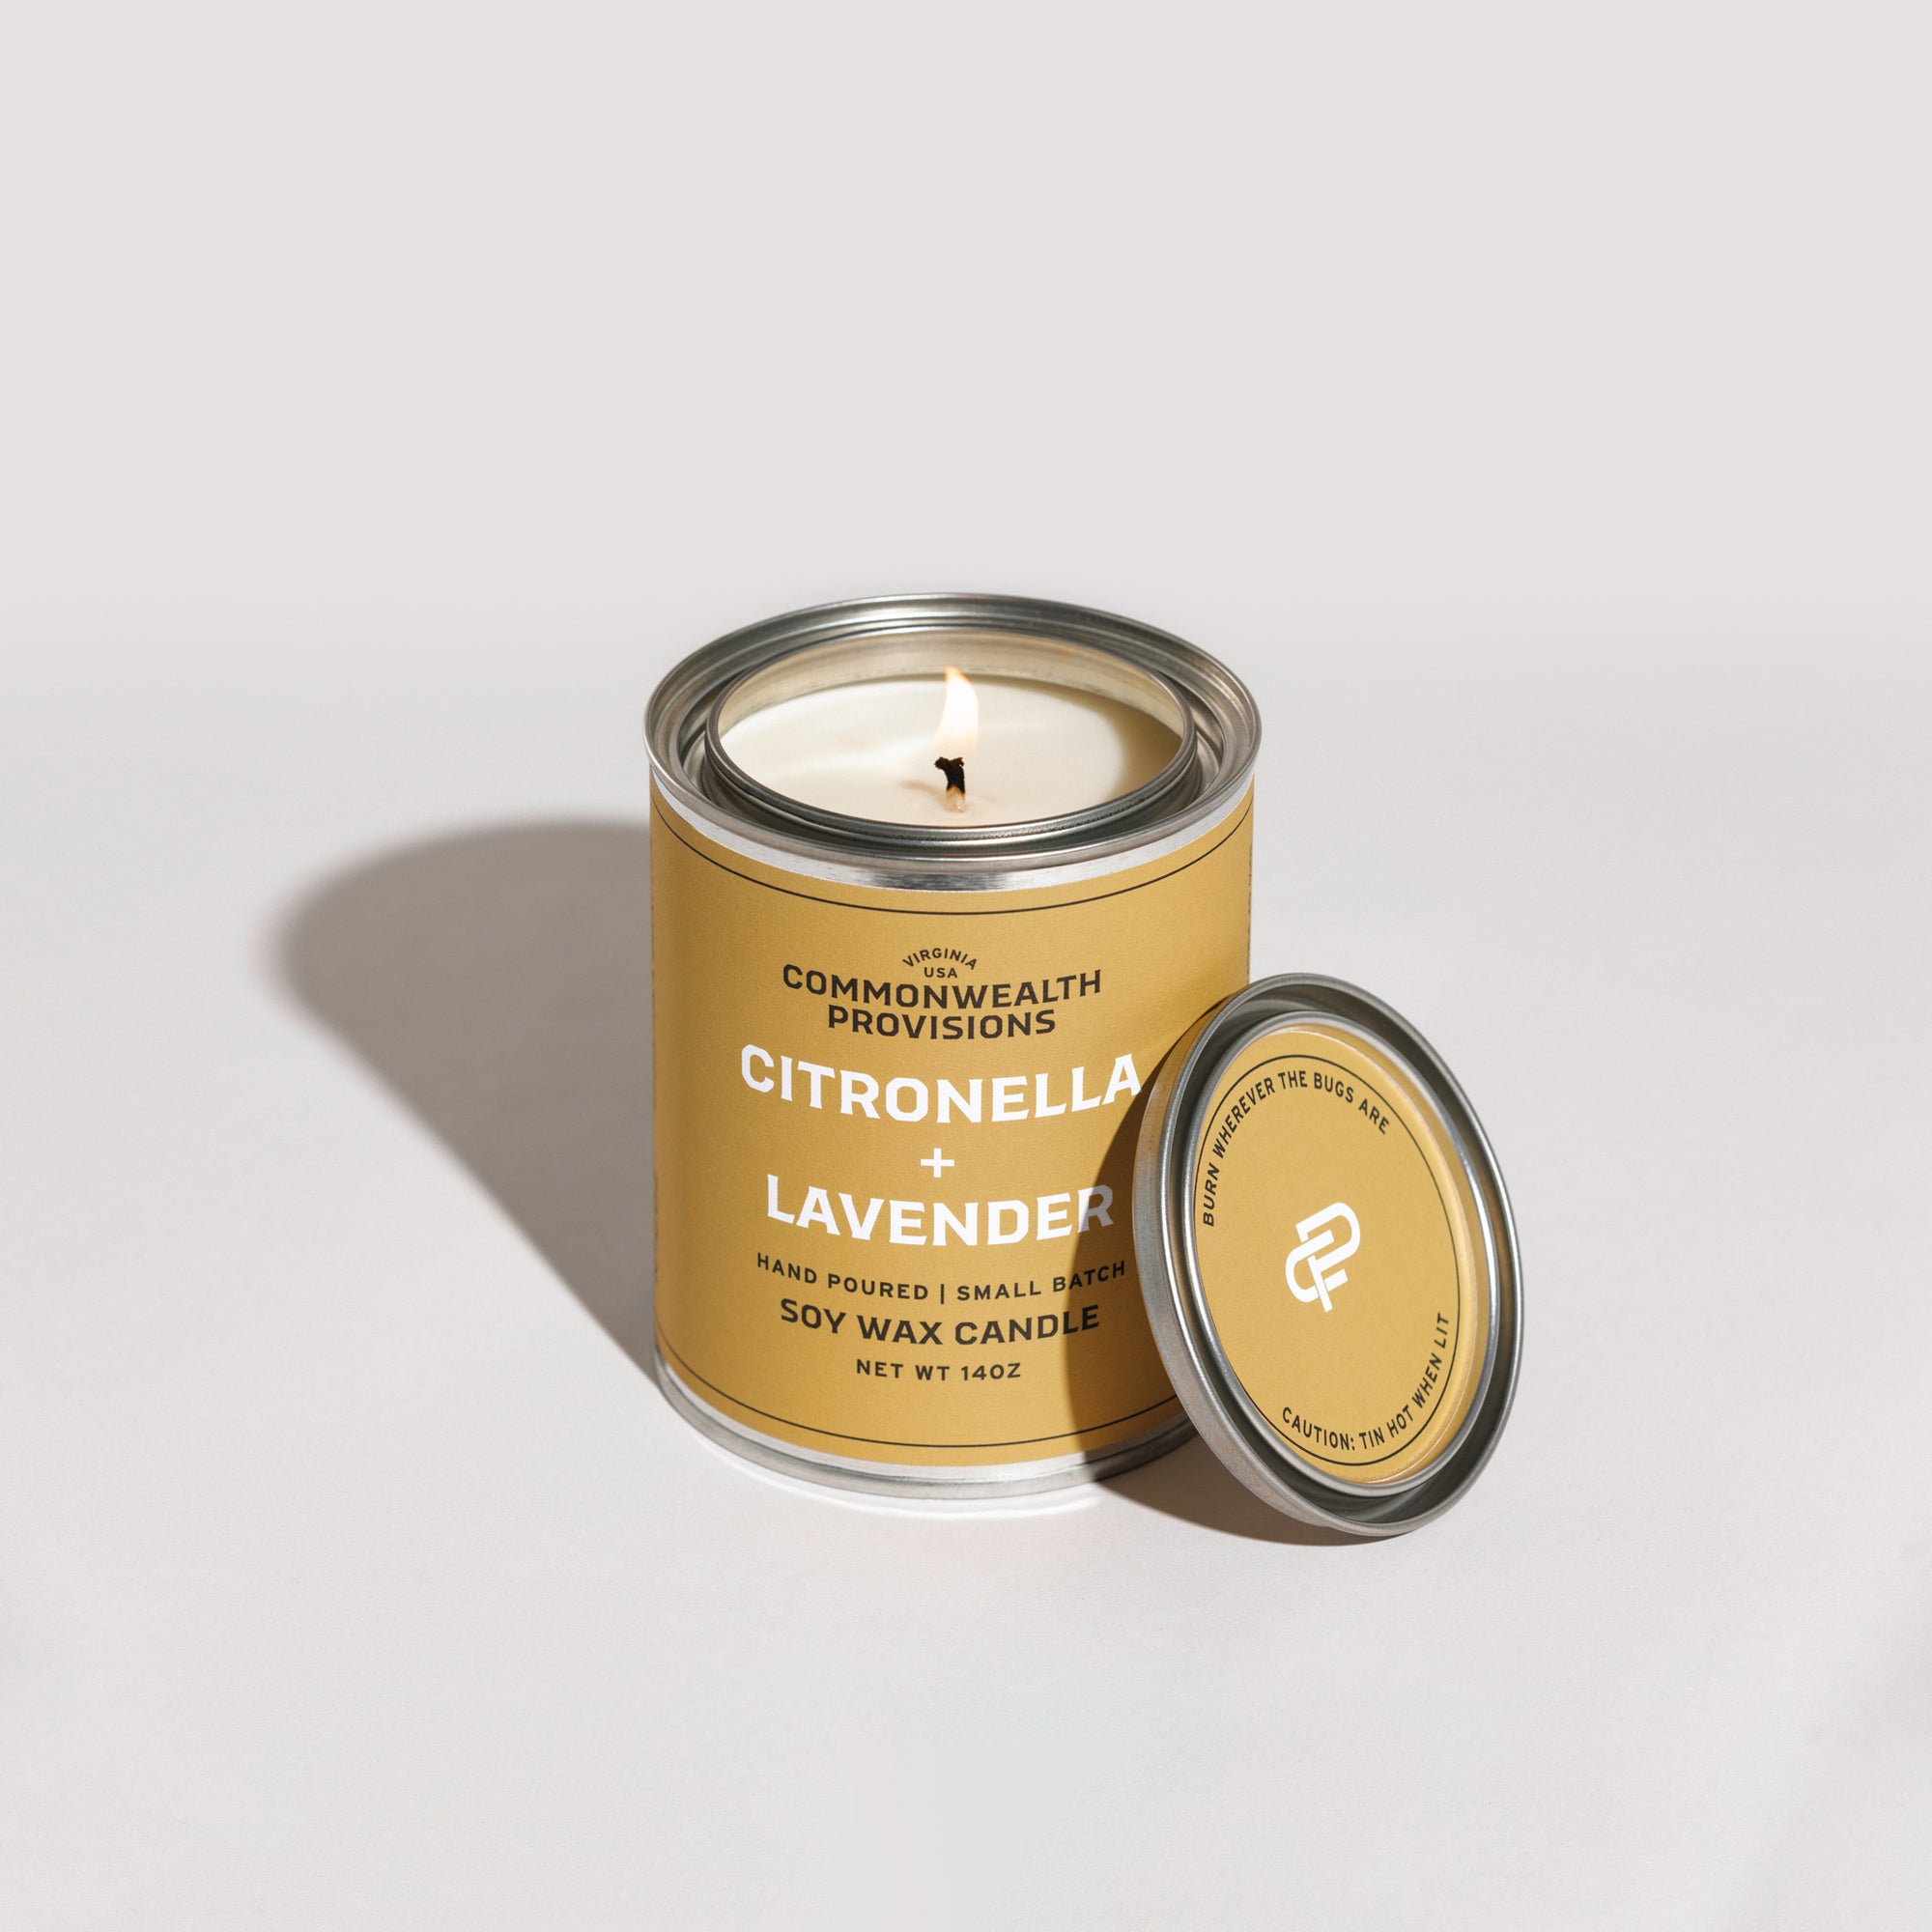 Citronella + Lavender Candle | Commonwealth Provisions